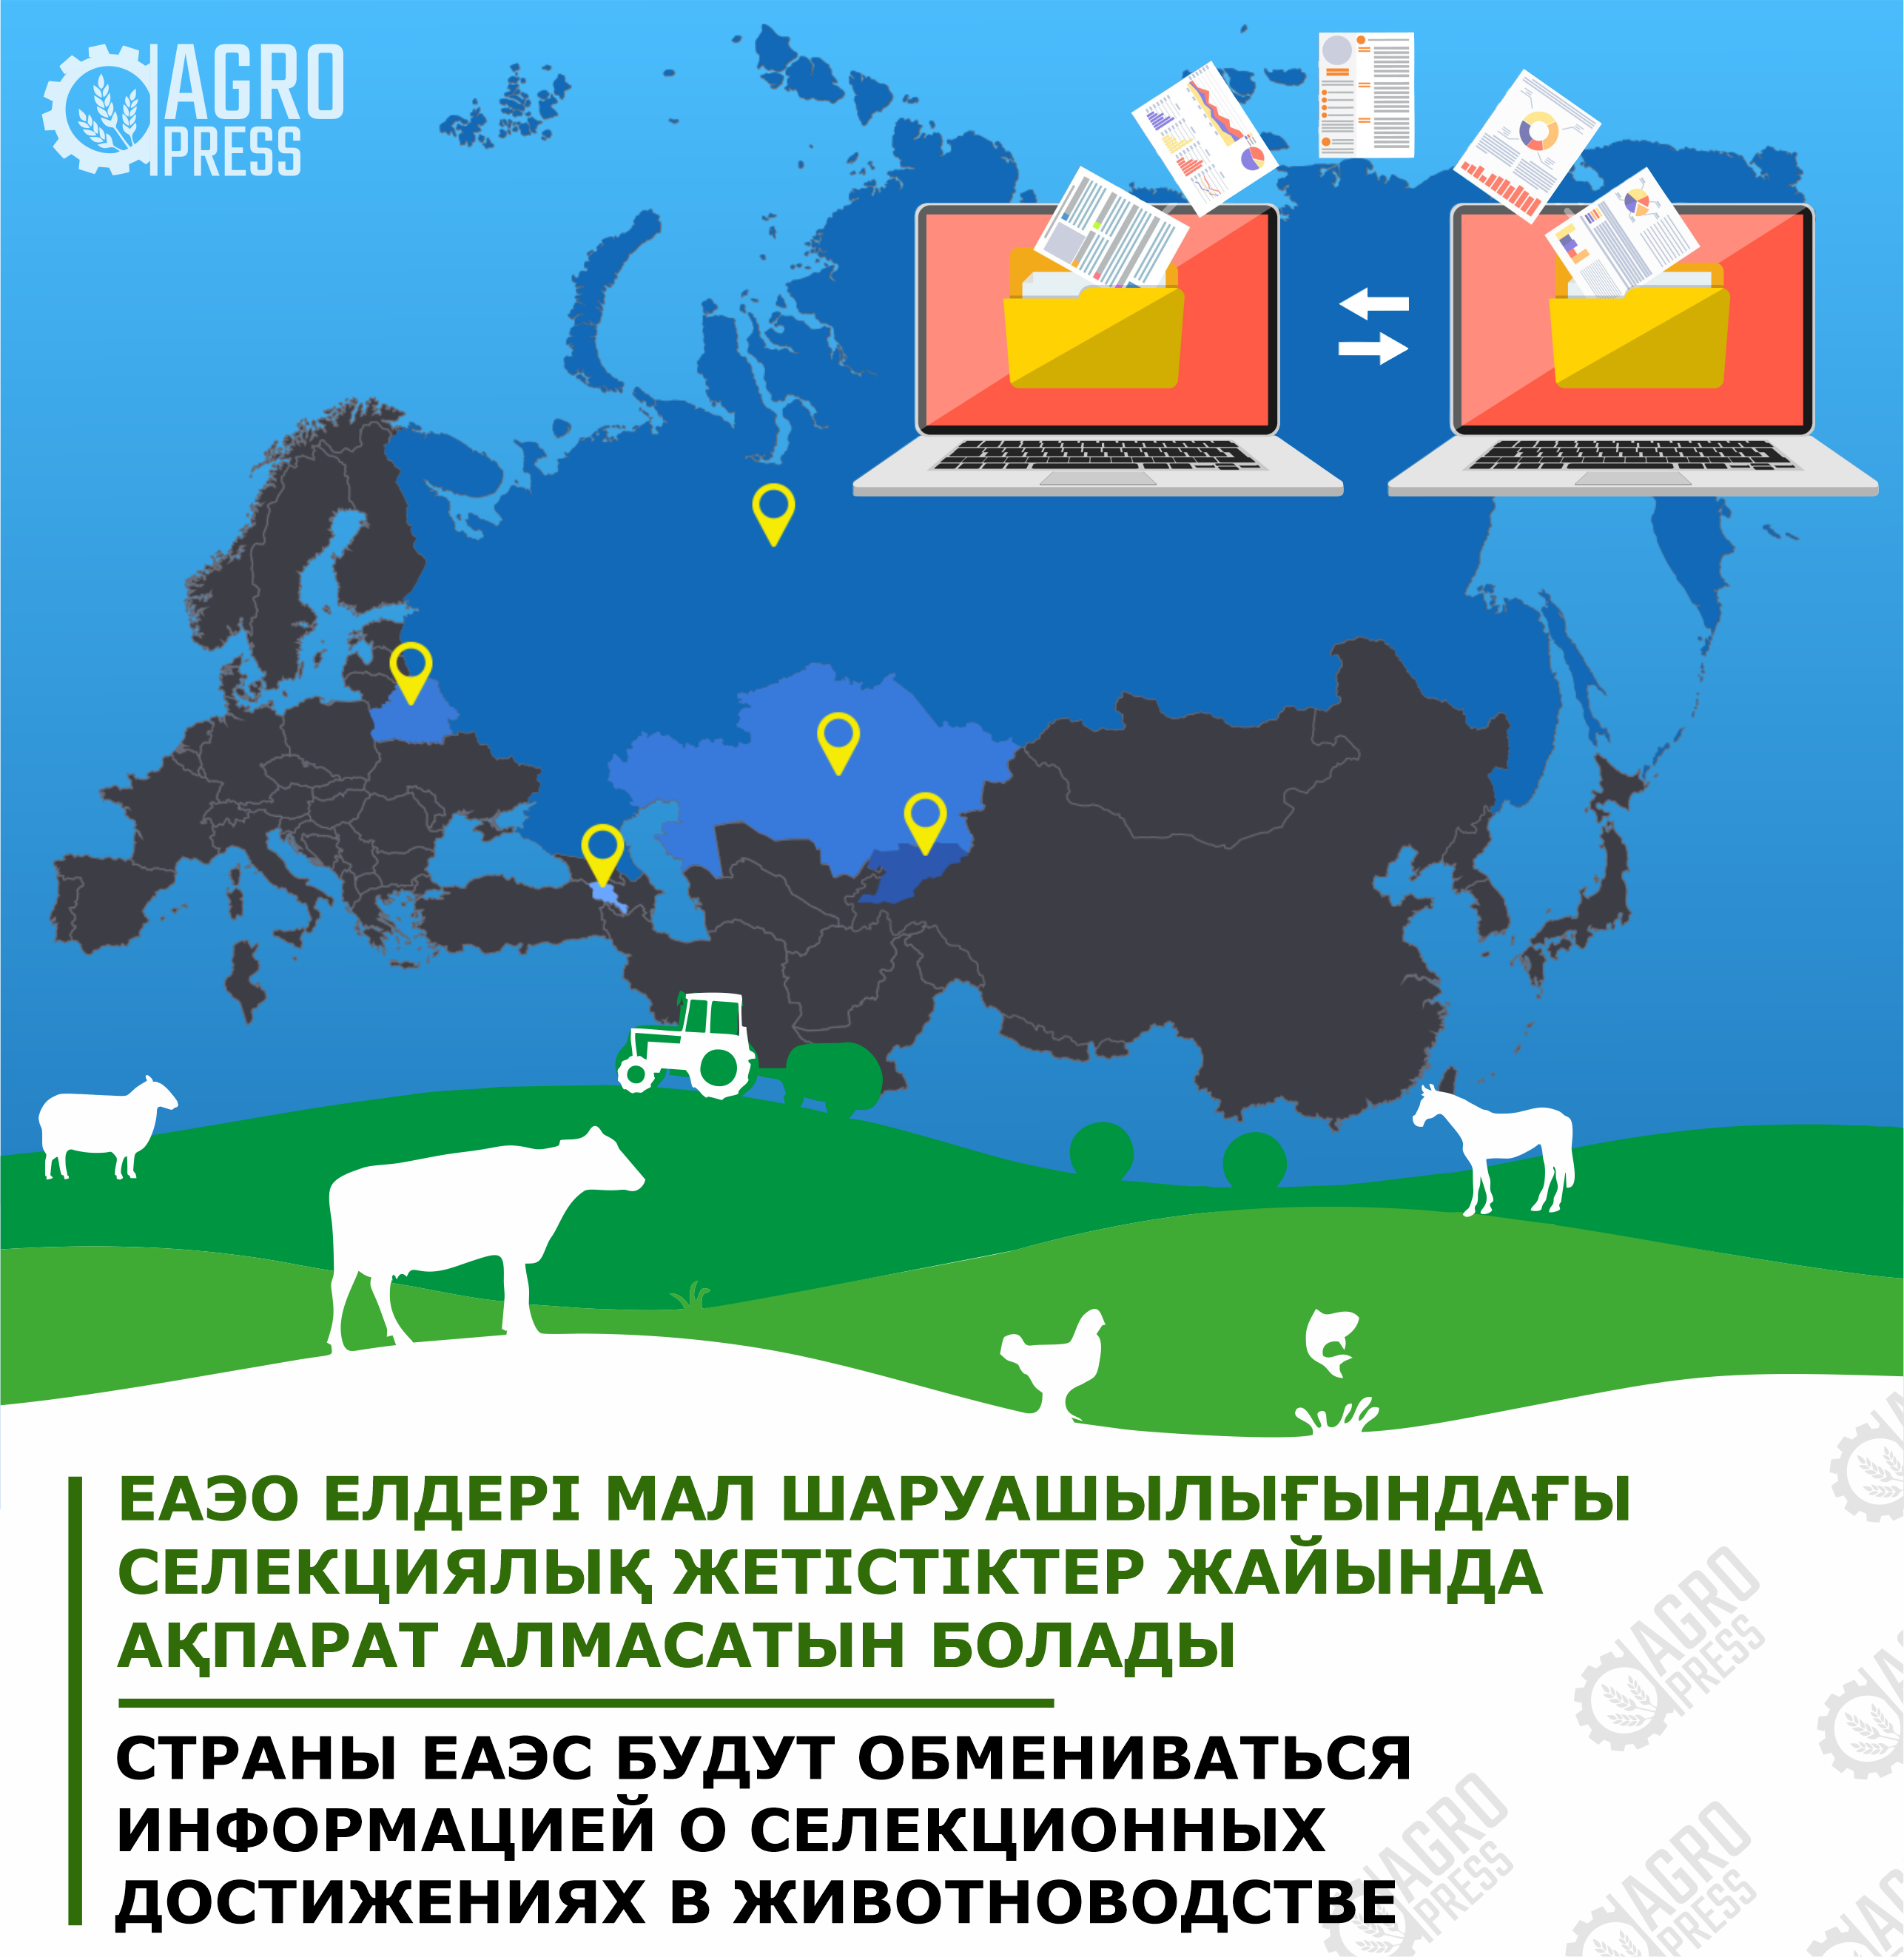 Страны ЕАЭС будут обмениваться информацией о селекционных достижениях в животноводстве